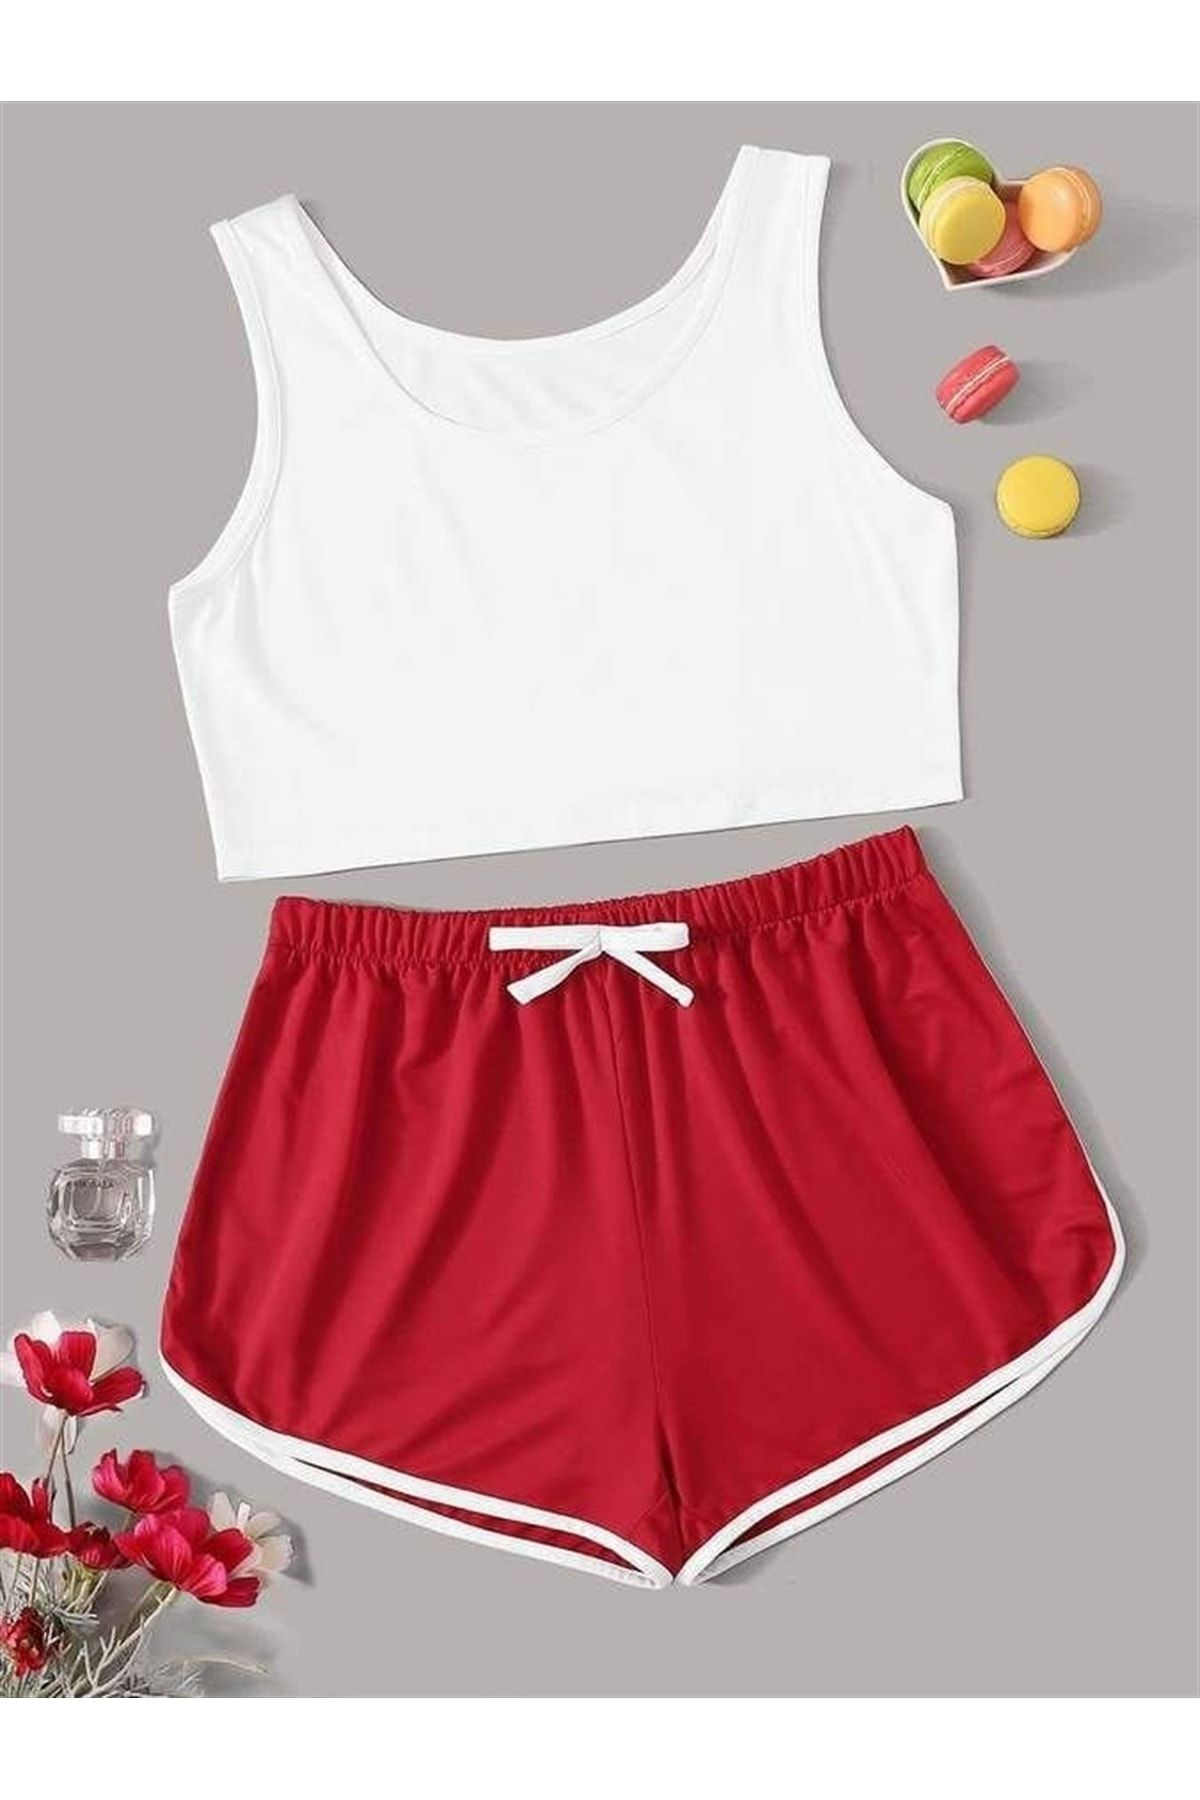 Pembishomewear Kadın Kırmızı Beyaz Askılı Şort Takımı